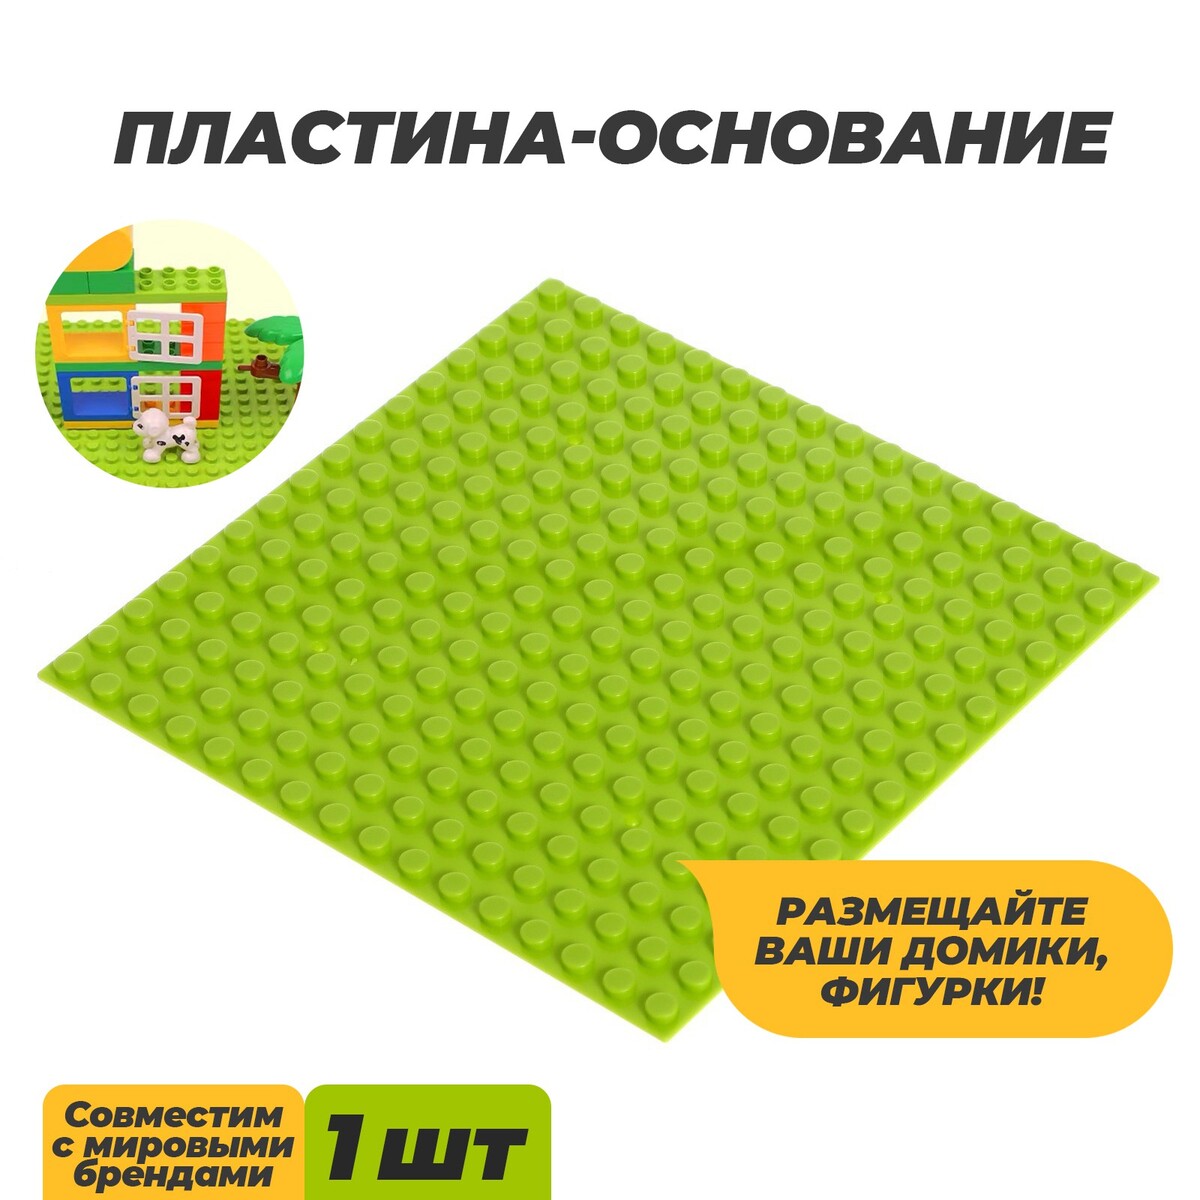 Пластина-основание для конструктора, 12,8 × 12,8 см, цвет салатовый пластина основание для конструктора 40 × 40 см серый